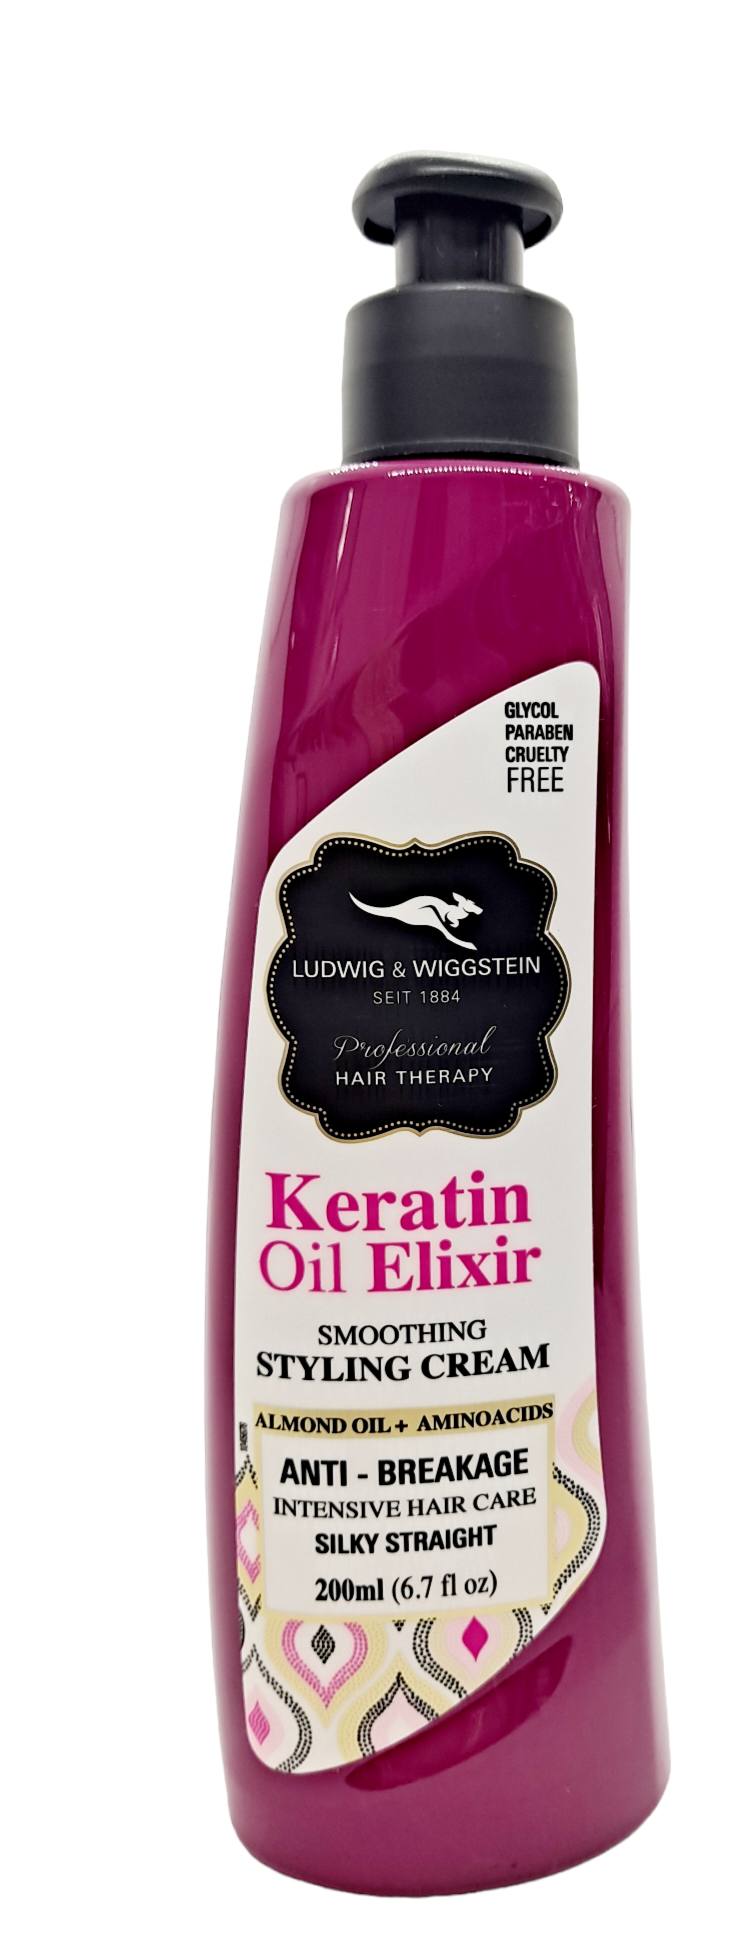 Keratin Oil Elixir Smoothing Styling Cream/Paraben Free /6.7 fl oz